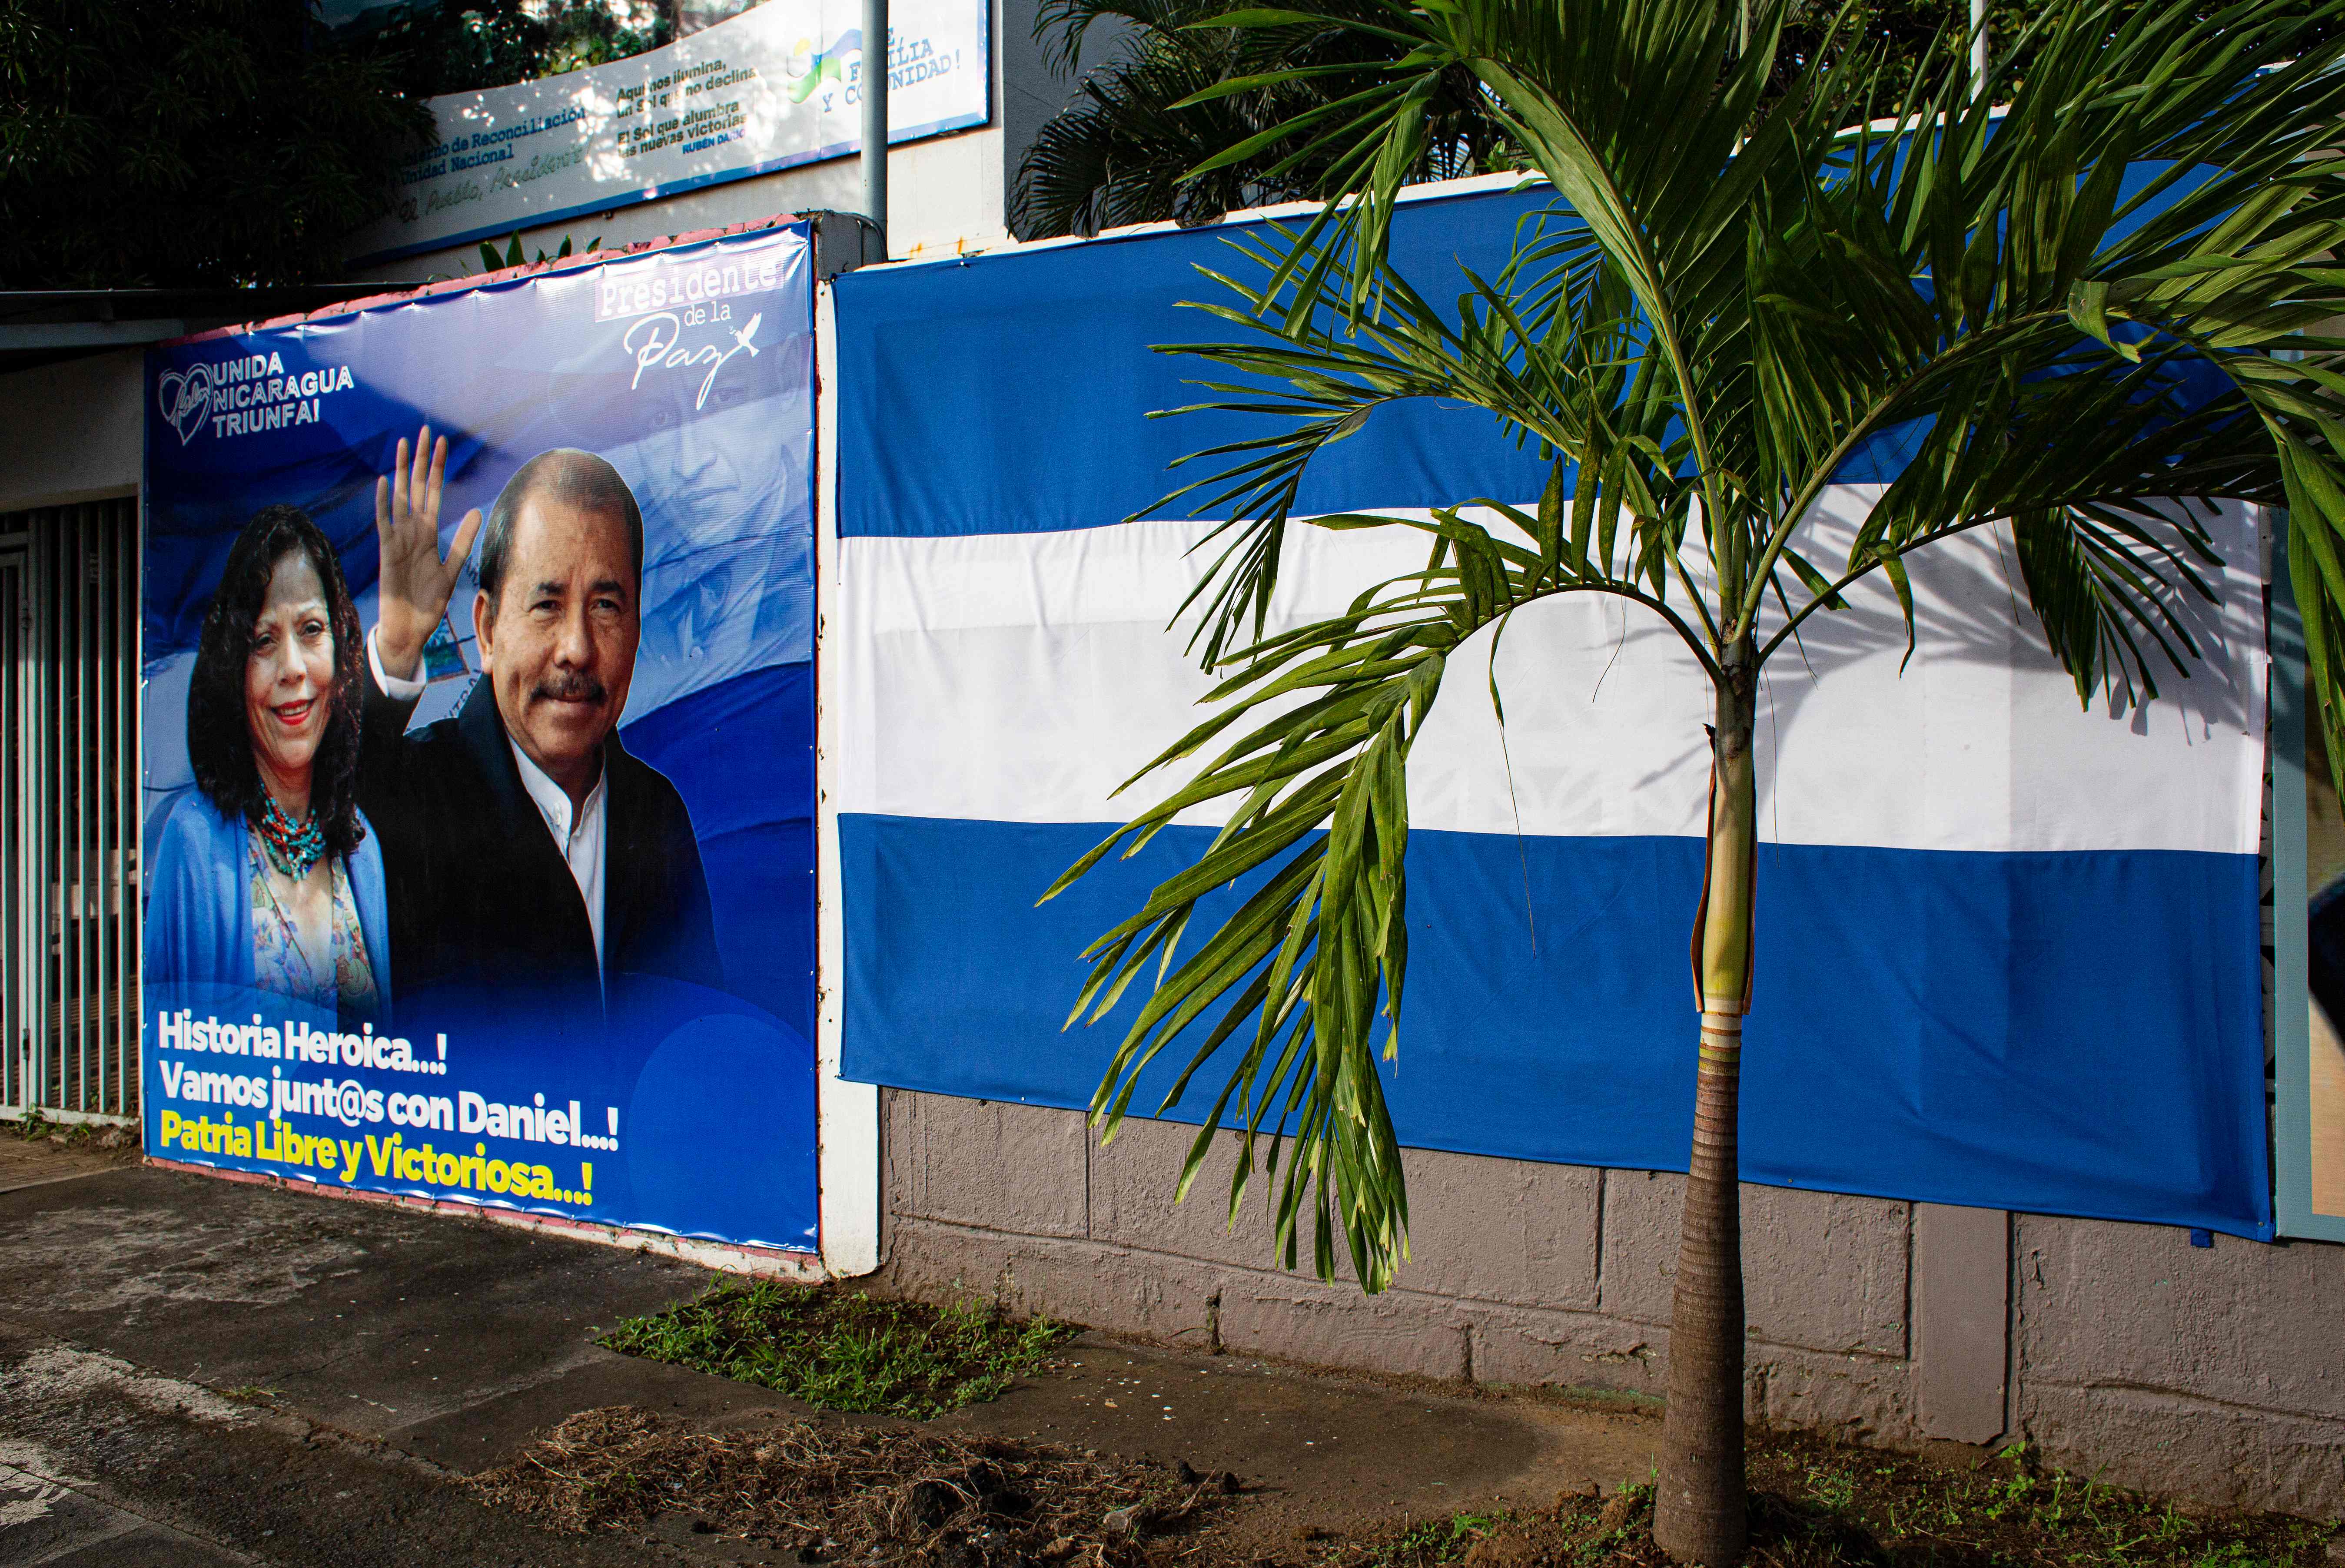 Vista de una publicidad al presidente de Nicaragua, Daniel Ortega. (Foto Prensa Libre: AFP)